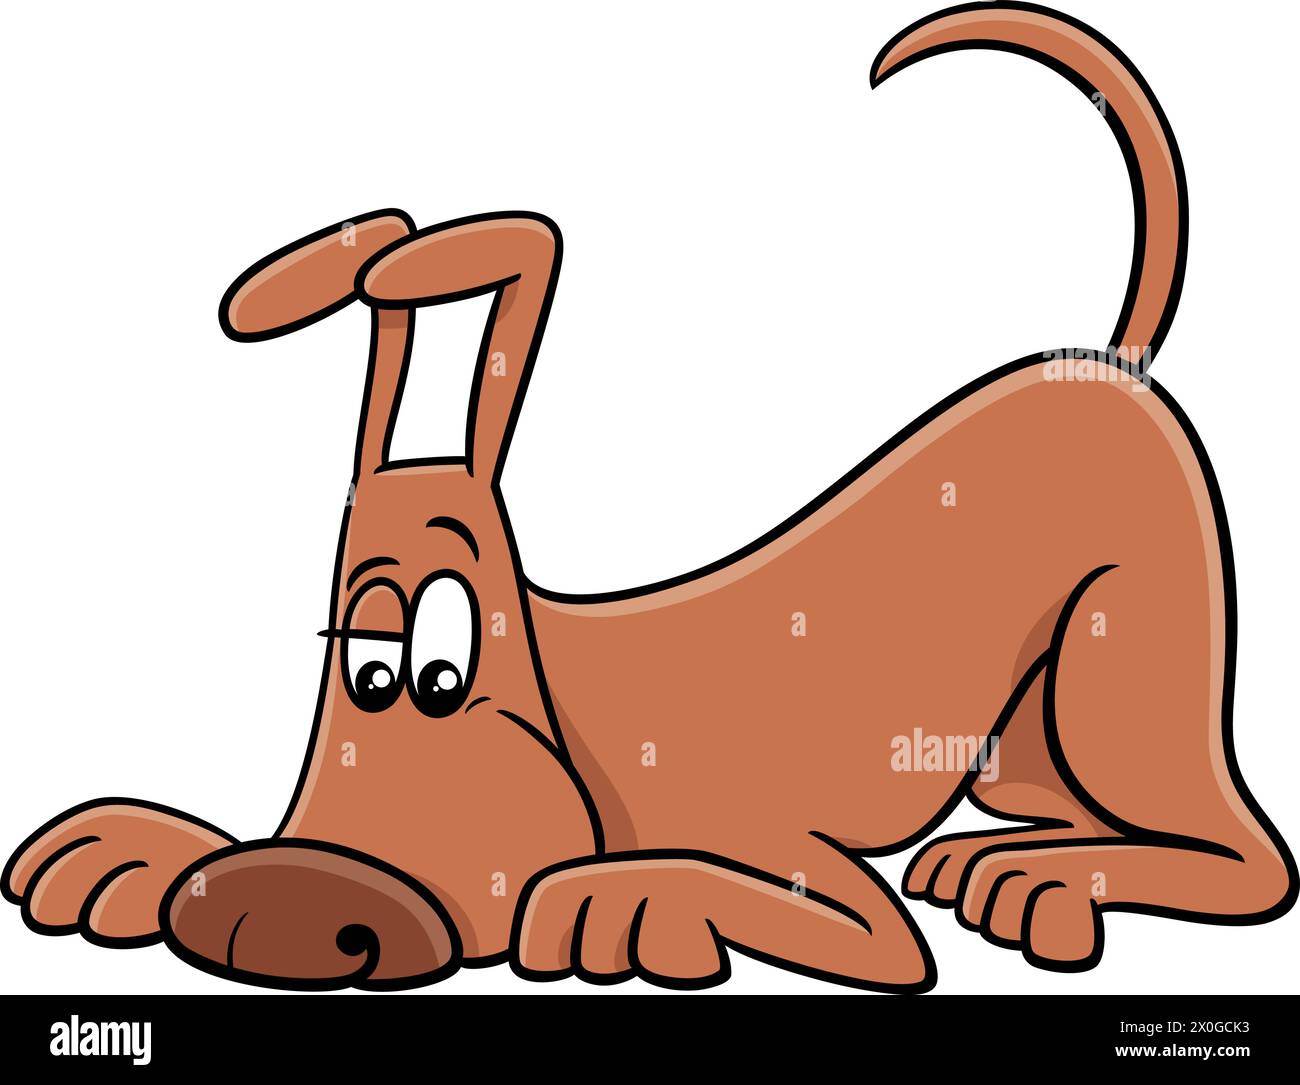 Illustration de dessin animé drôle reniflant le personnage animal comique de chien brun Illustration de Vecteur